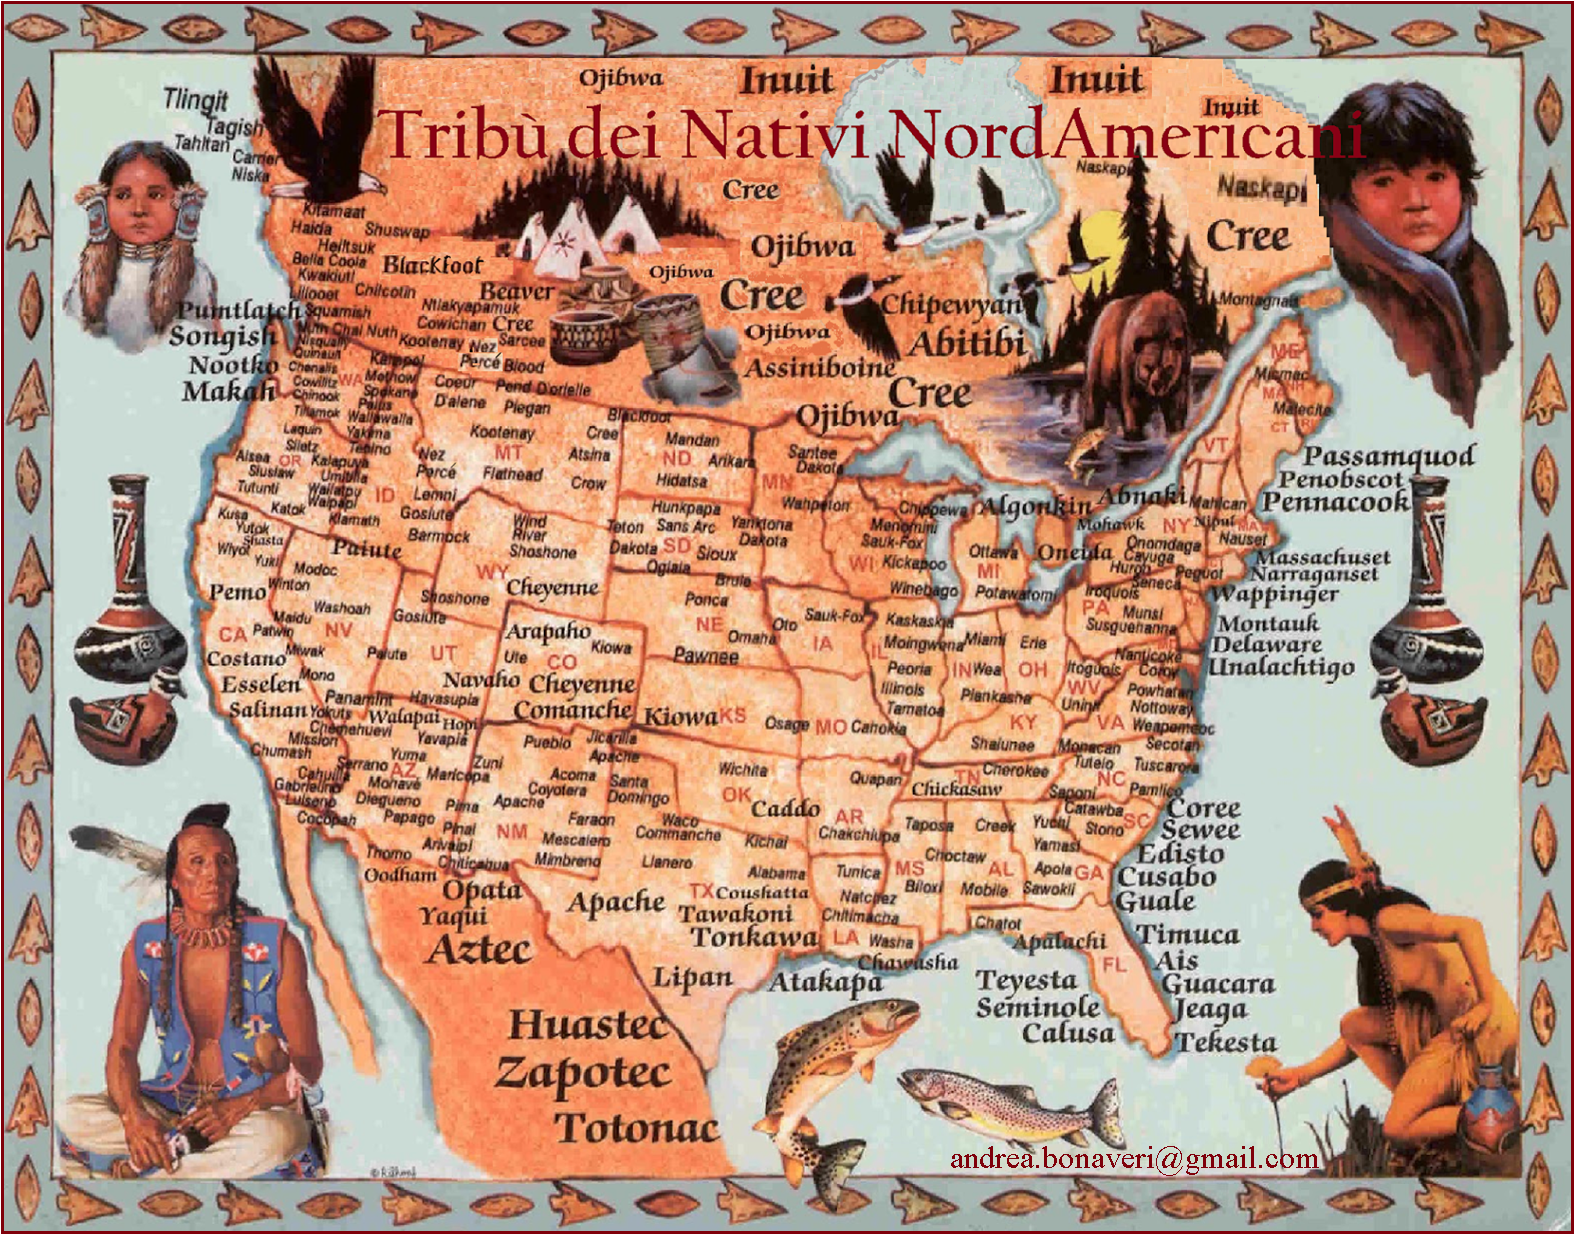 Pietreterra Elenco Tribu Personaggi Eventi E Cultura Dei Nativi Nord Americani Gli Indiani D America